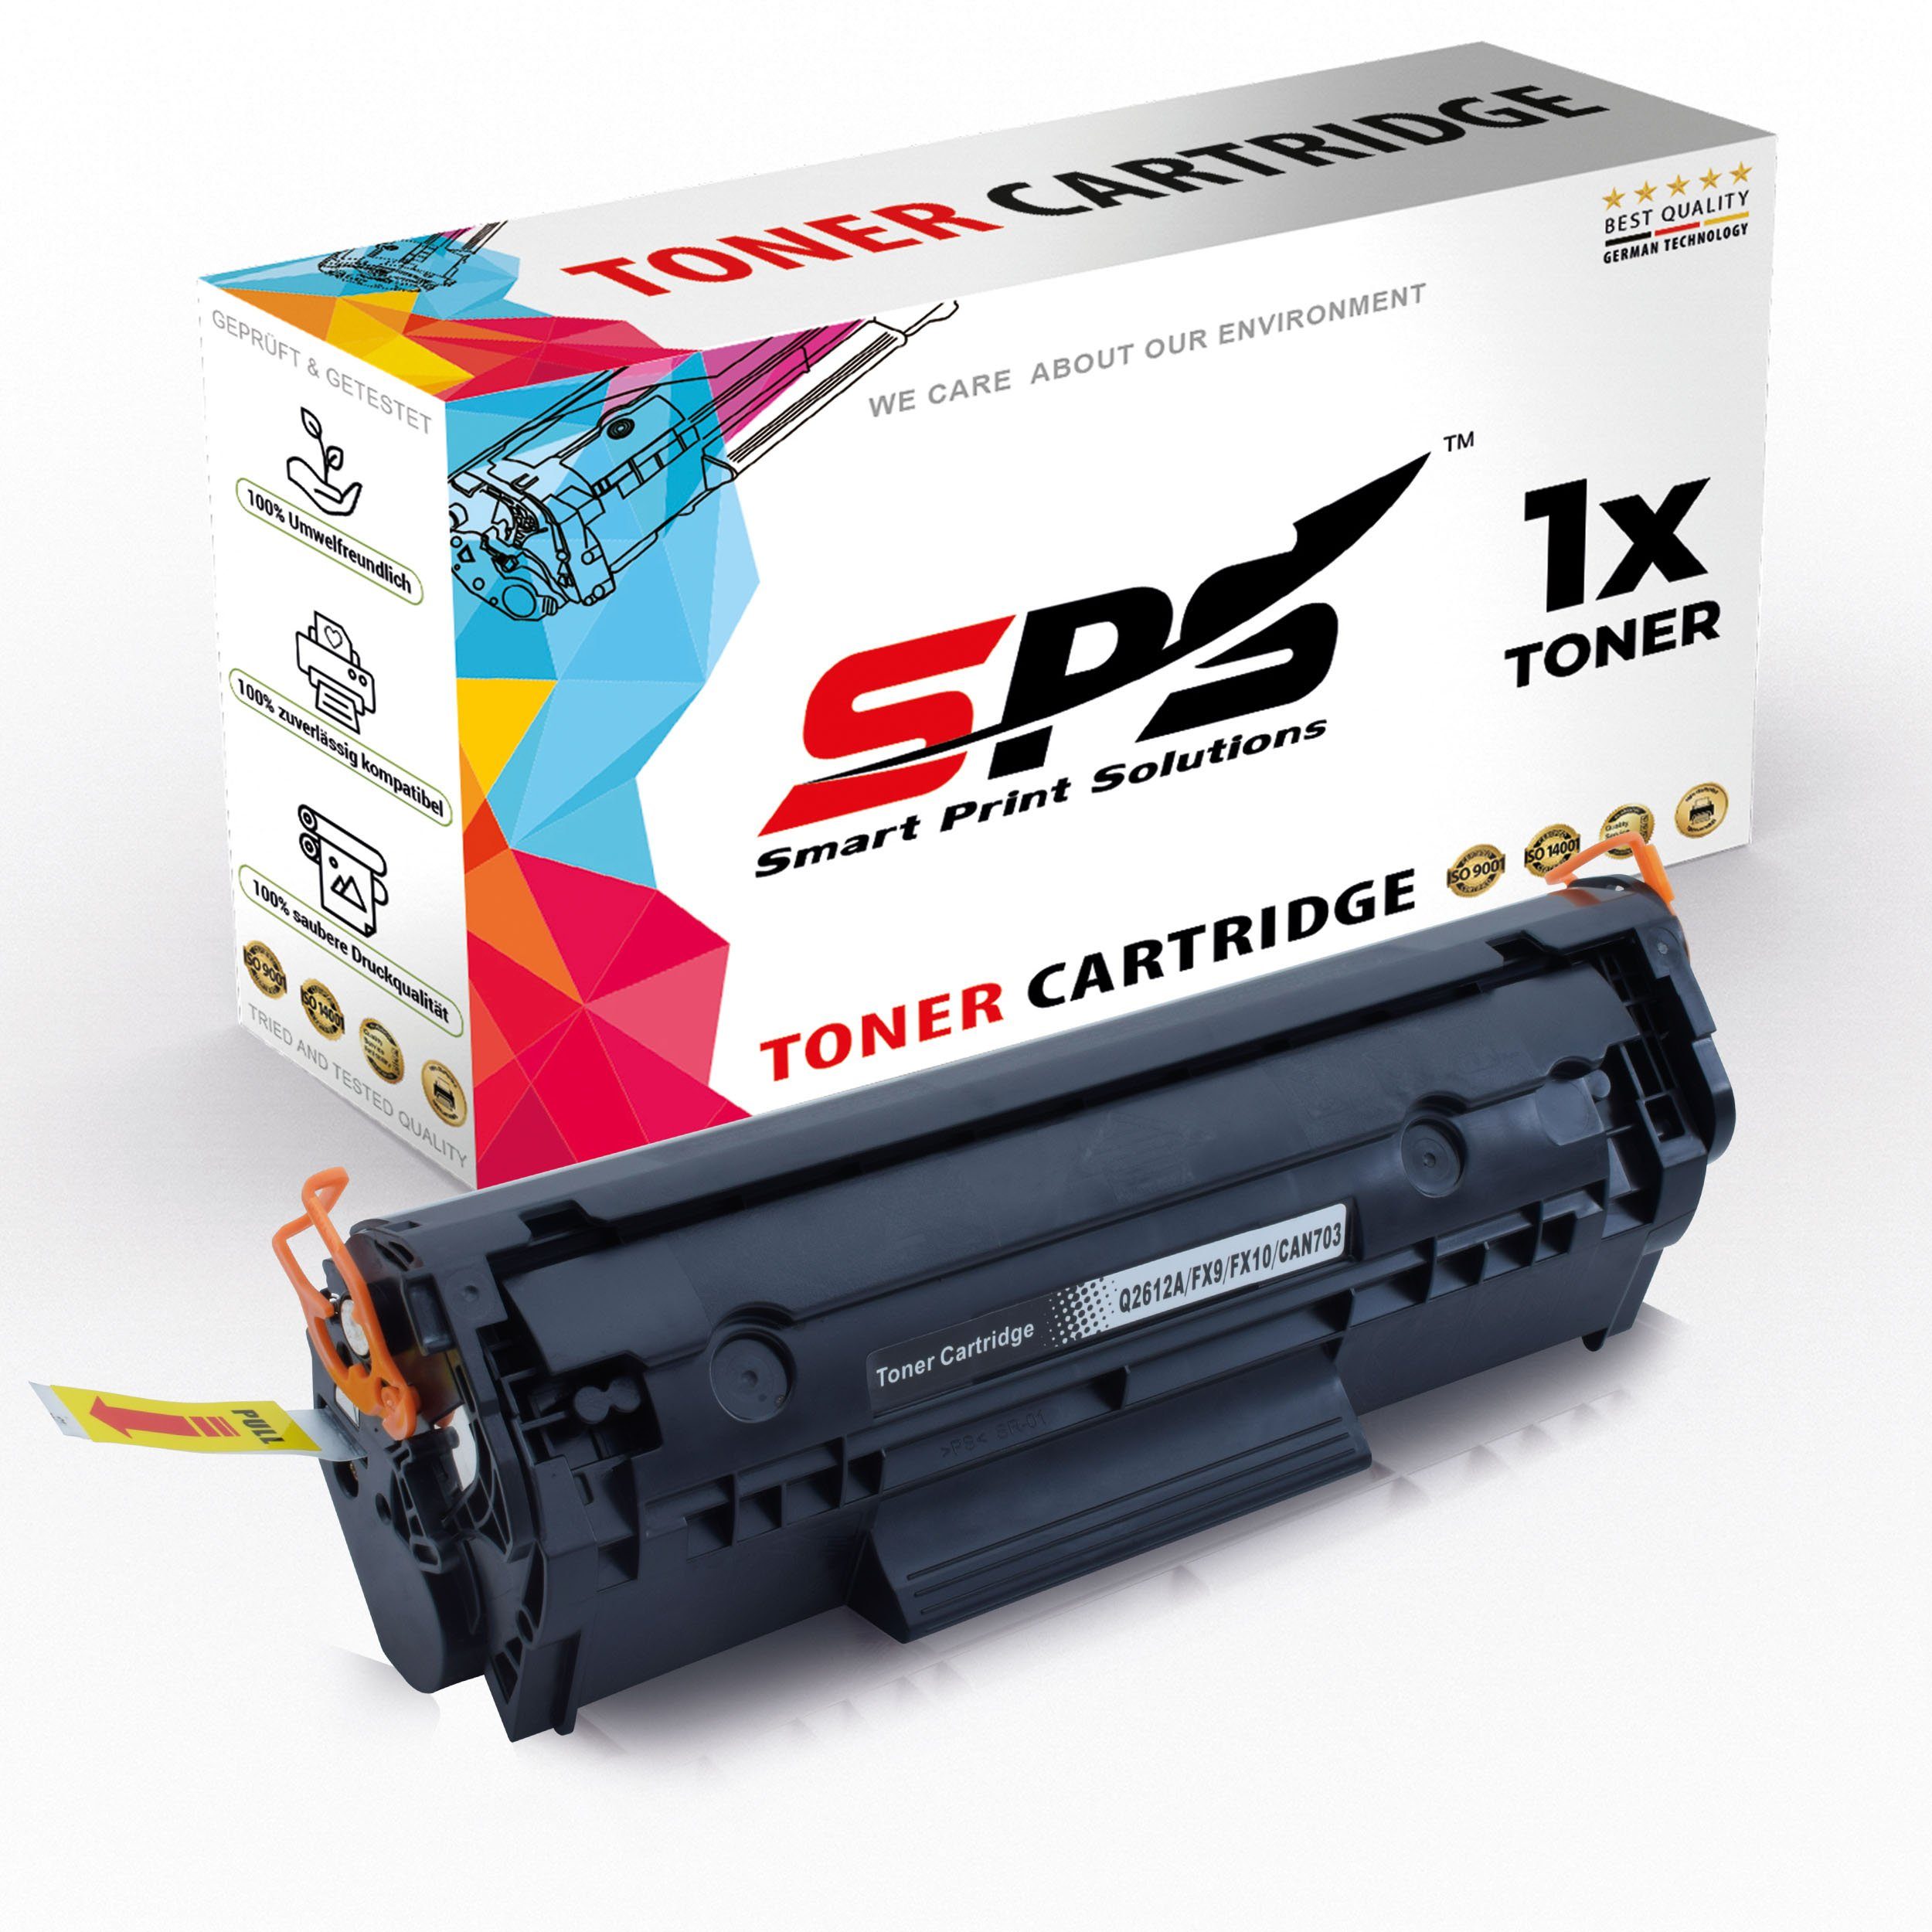 SPS Tonerkartusche Kompatibel für HP Laserjet 1018 (CB419A) 12A Q2612, (1er Pack)